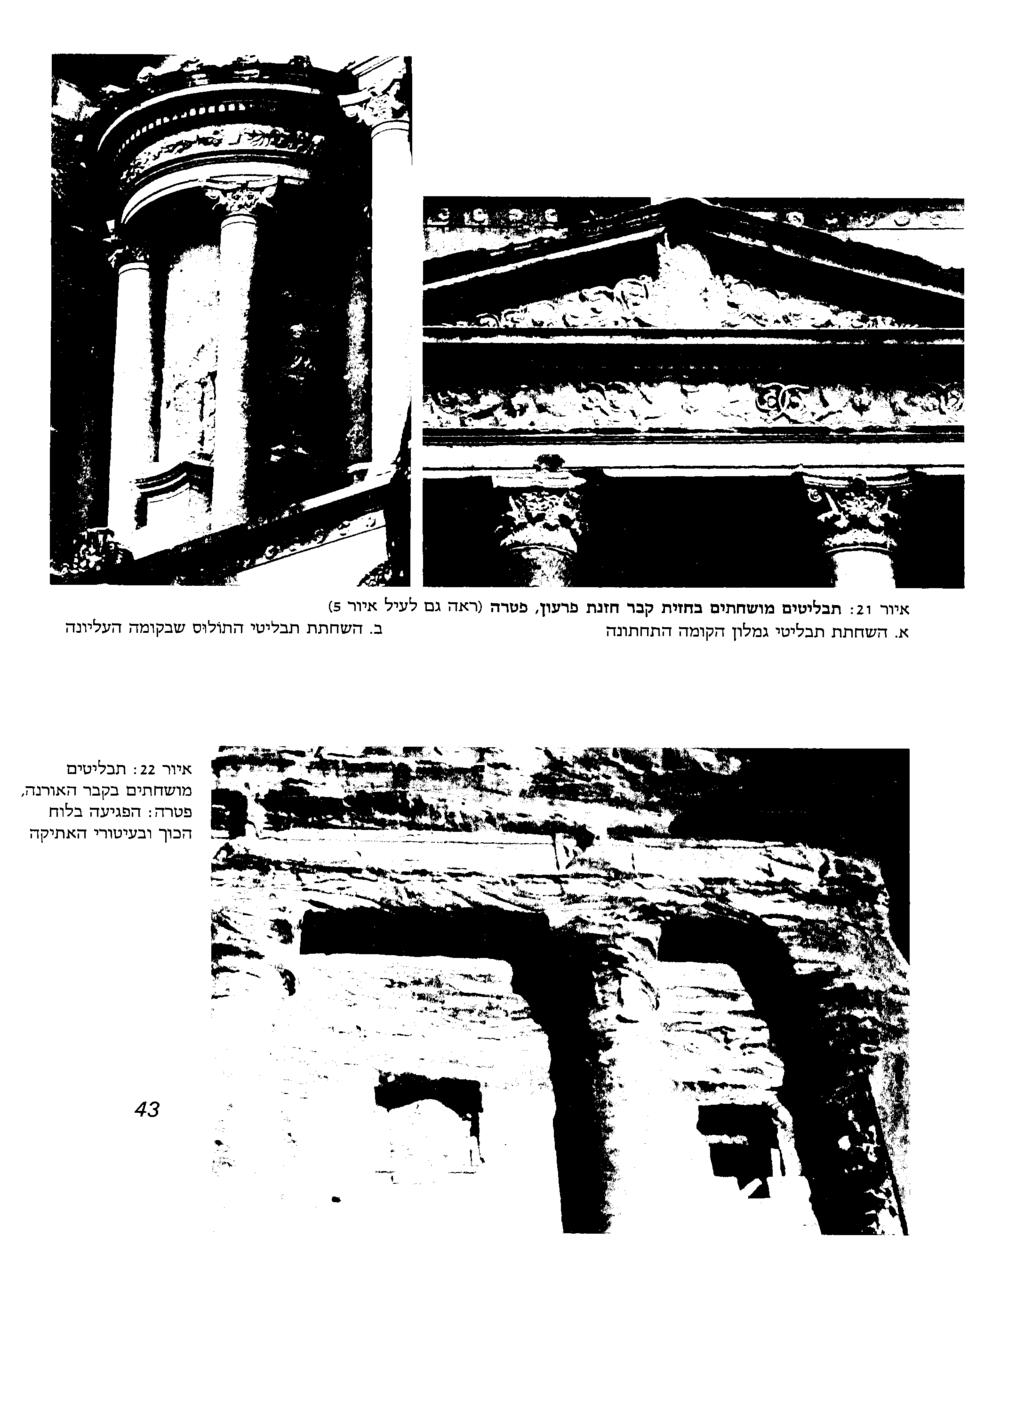 איור : 21 תבליטים מושחתים בחזית קבר חזנת א השחתת תבליטי גמלון הקומה התחתונה פרעון פטרה )ראה גם לעיל איור 5( ב